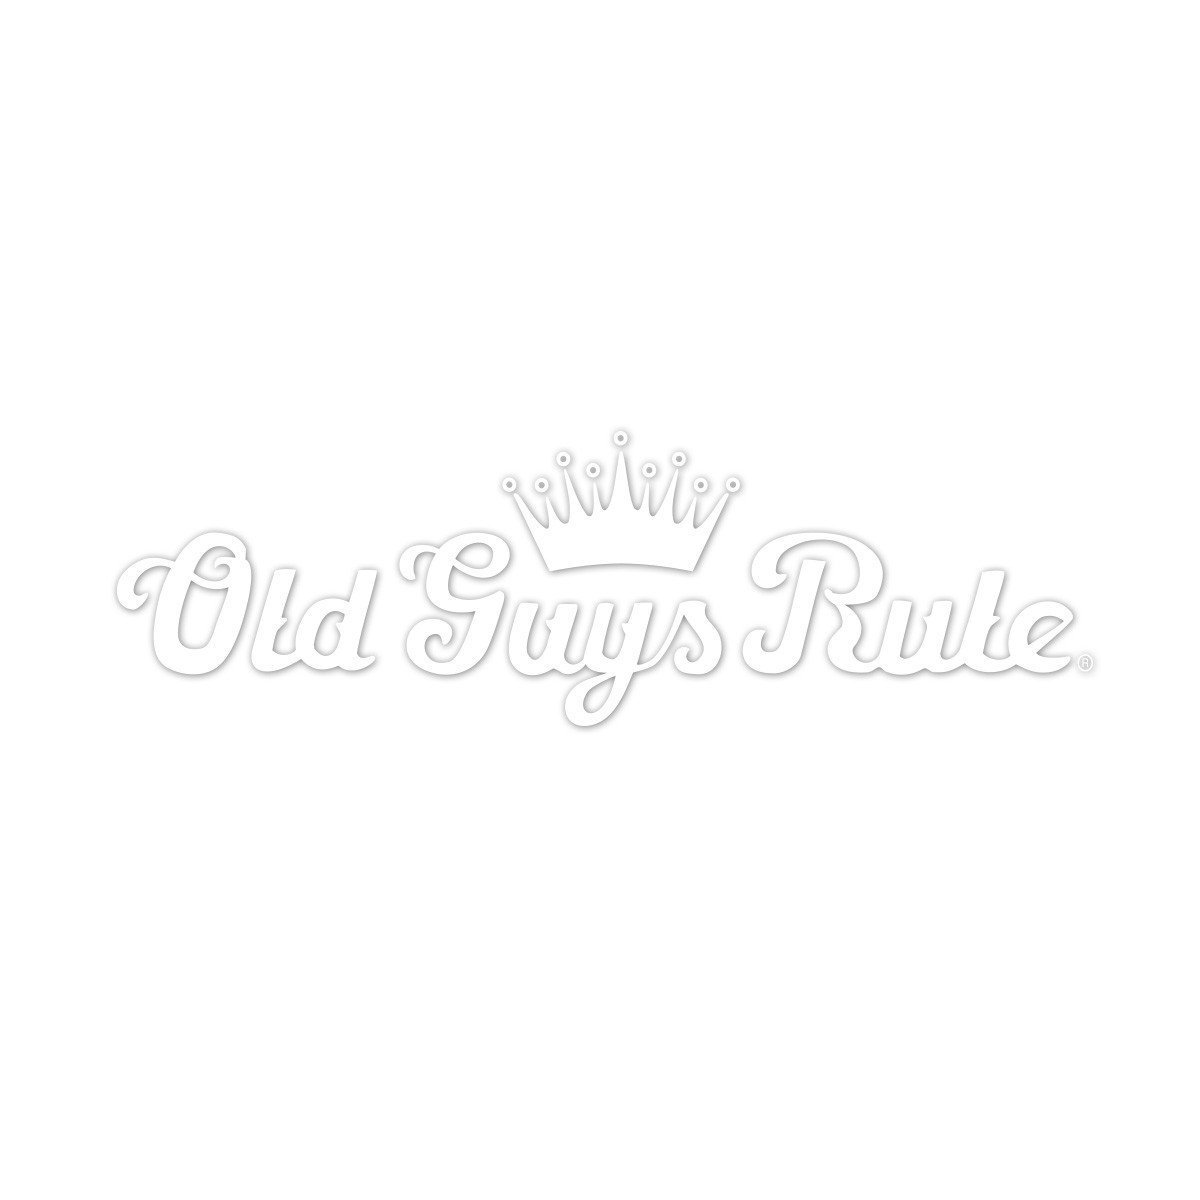 Old Guys Rule - Sticker - Crown Script